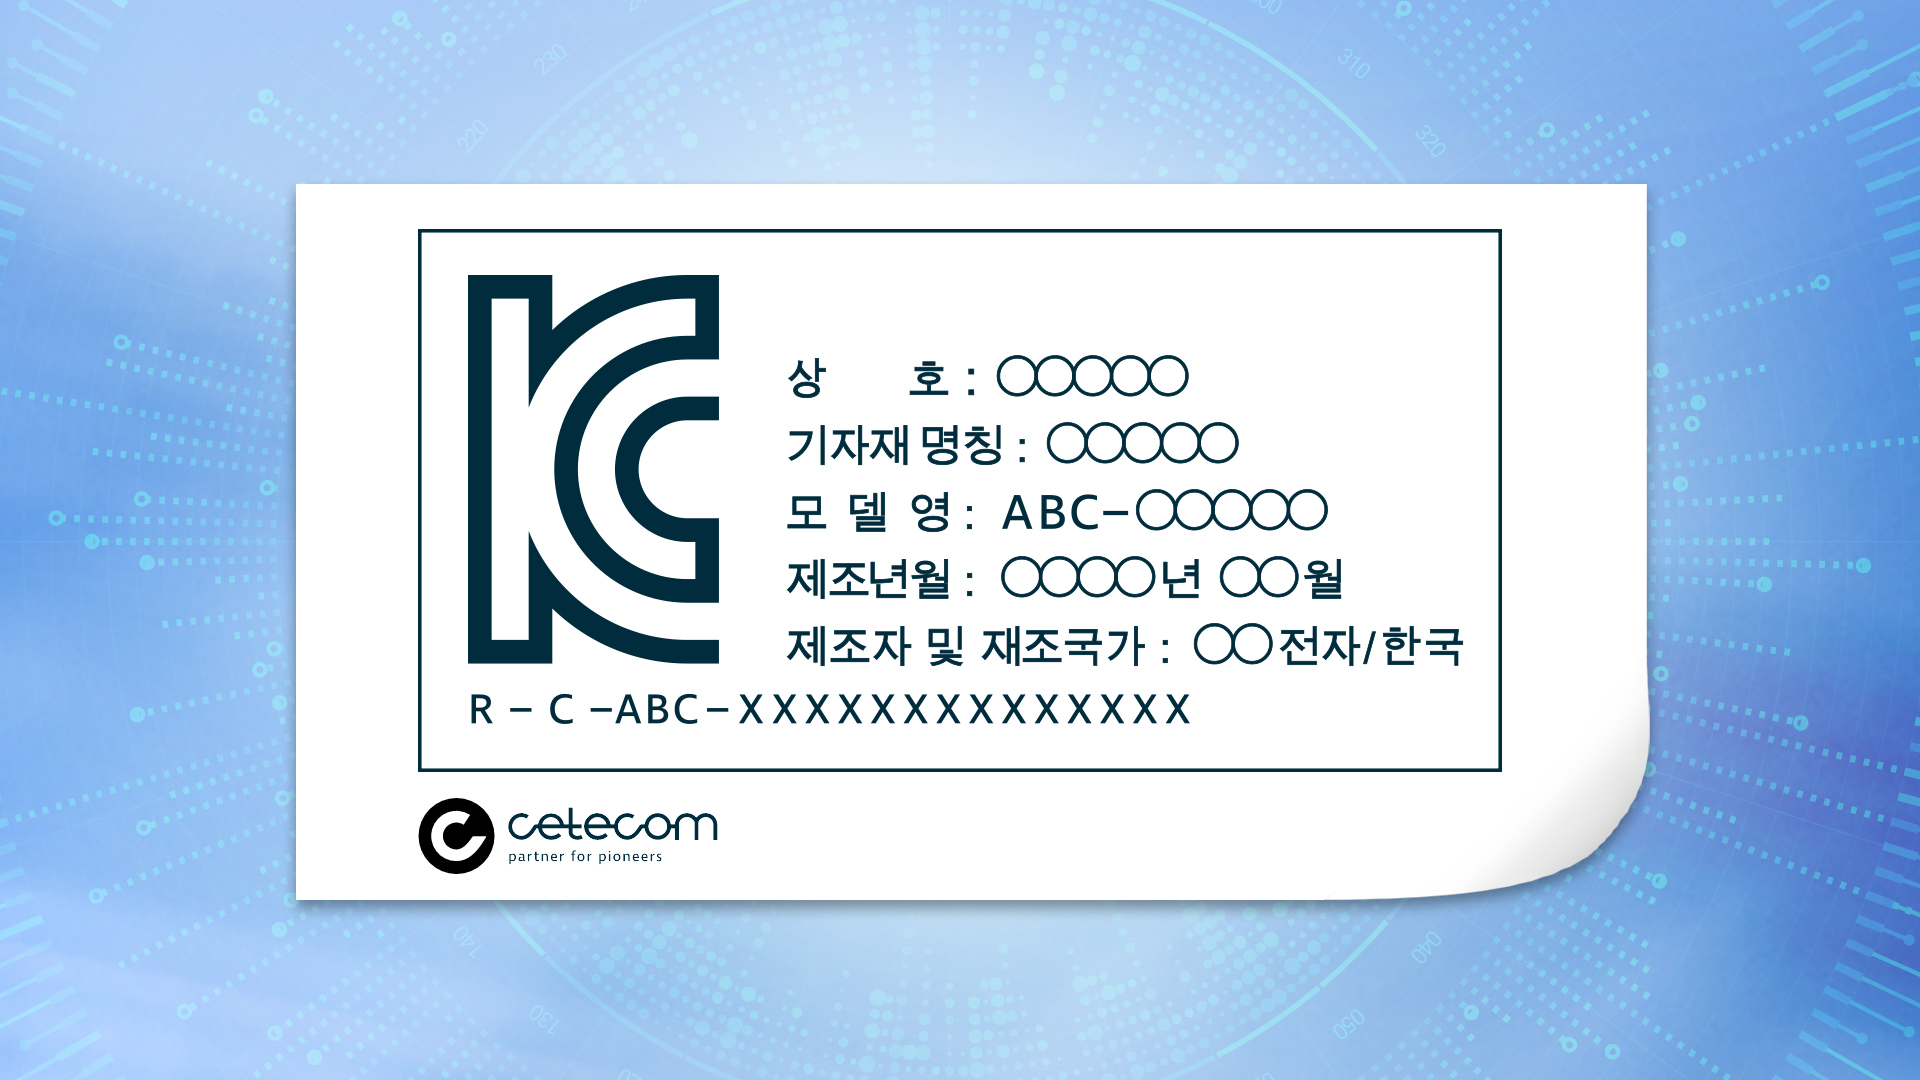 Ein KC-Zertifizierungslabel, auf dem sowohl das KC Logo, als auch das Cetecom Logo zu erkennen ist